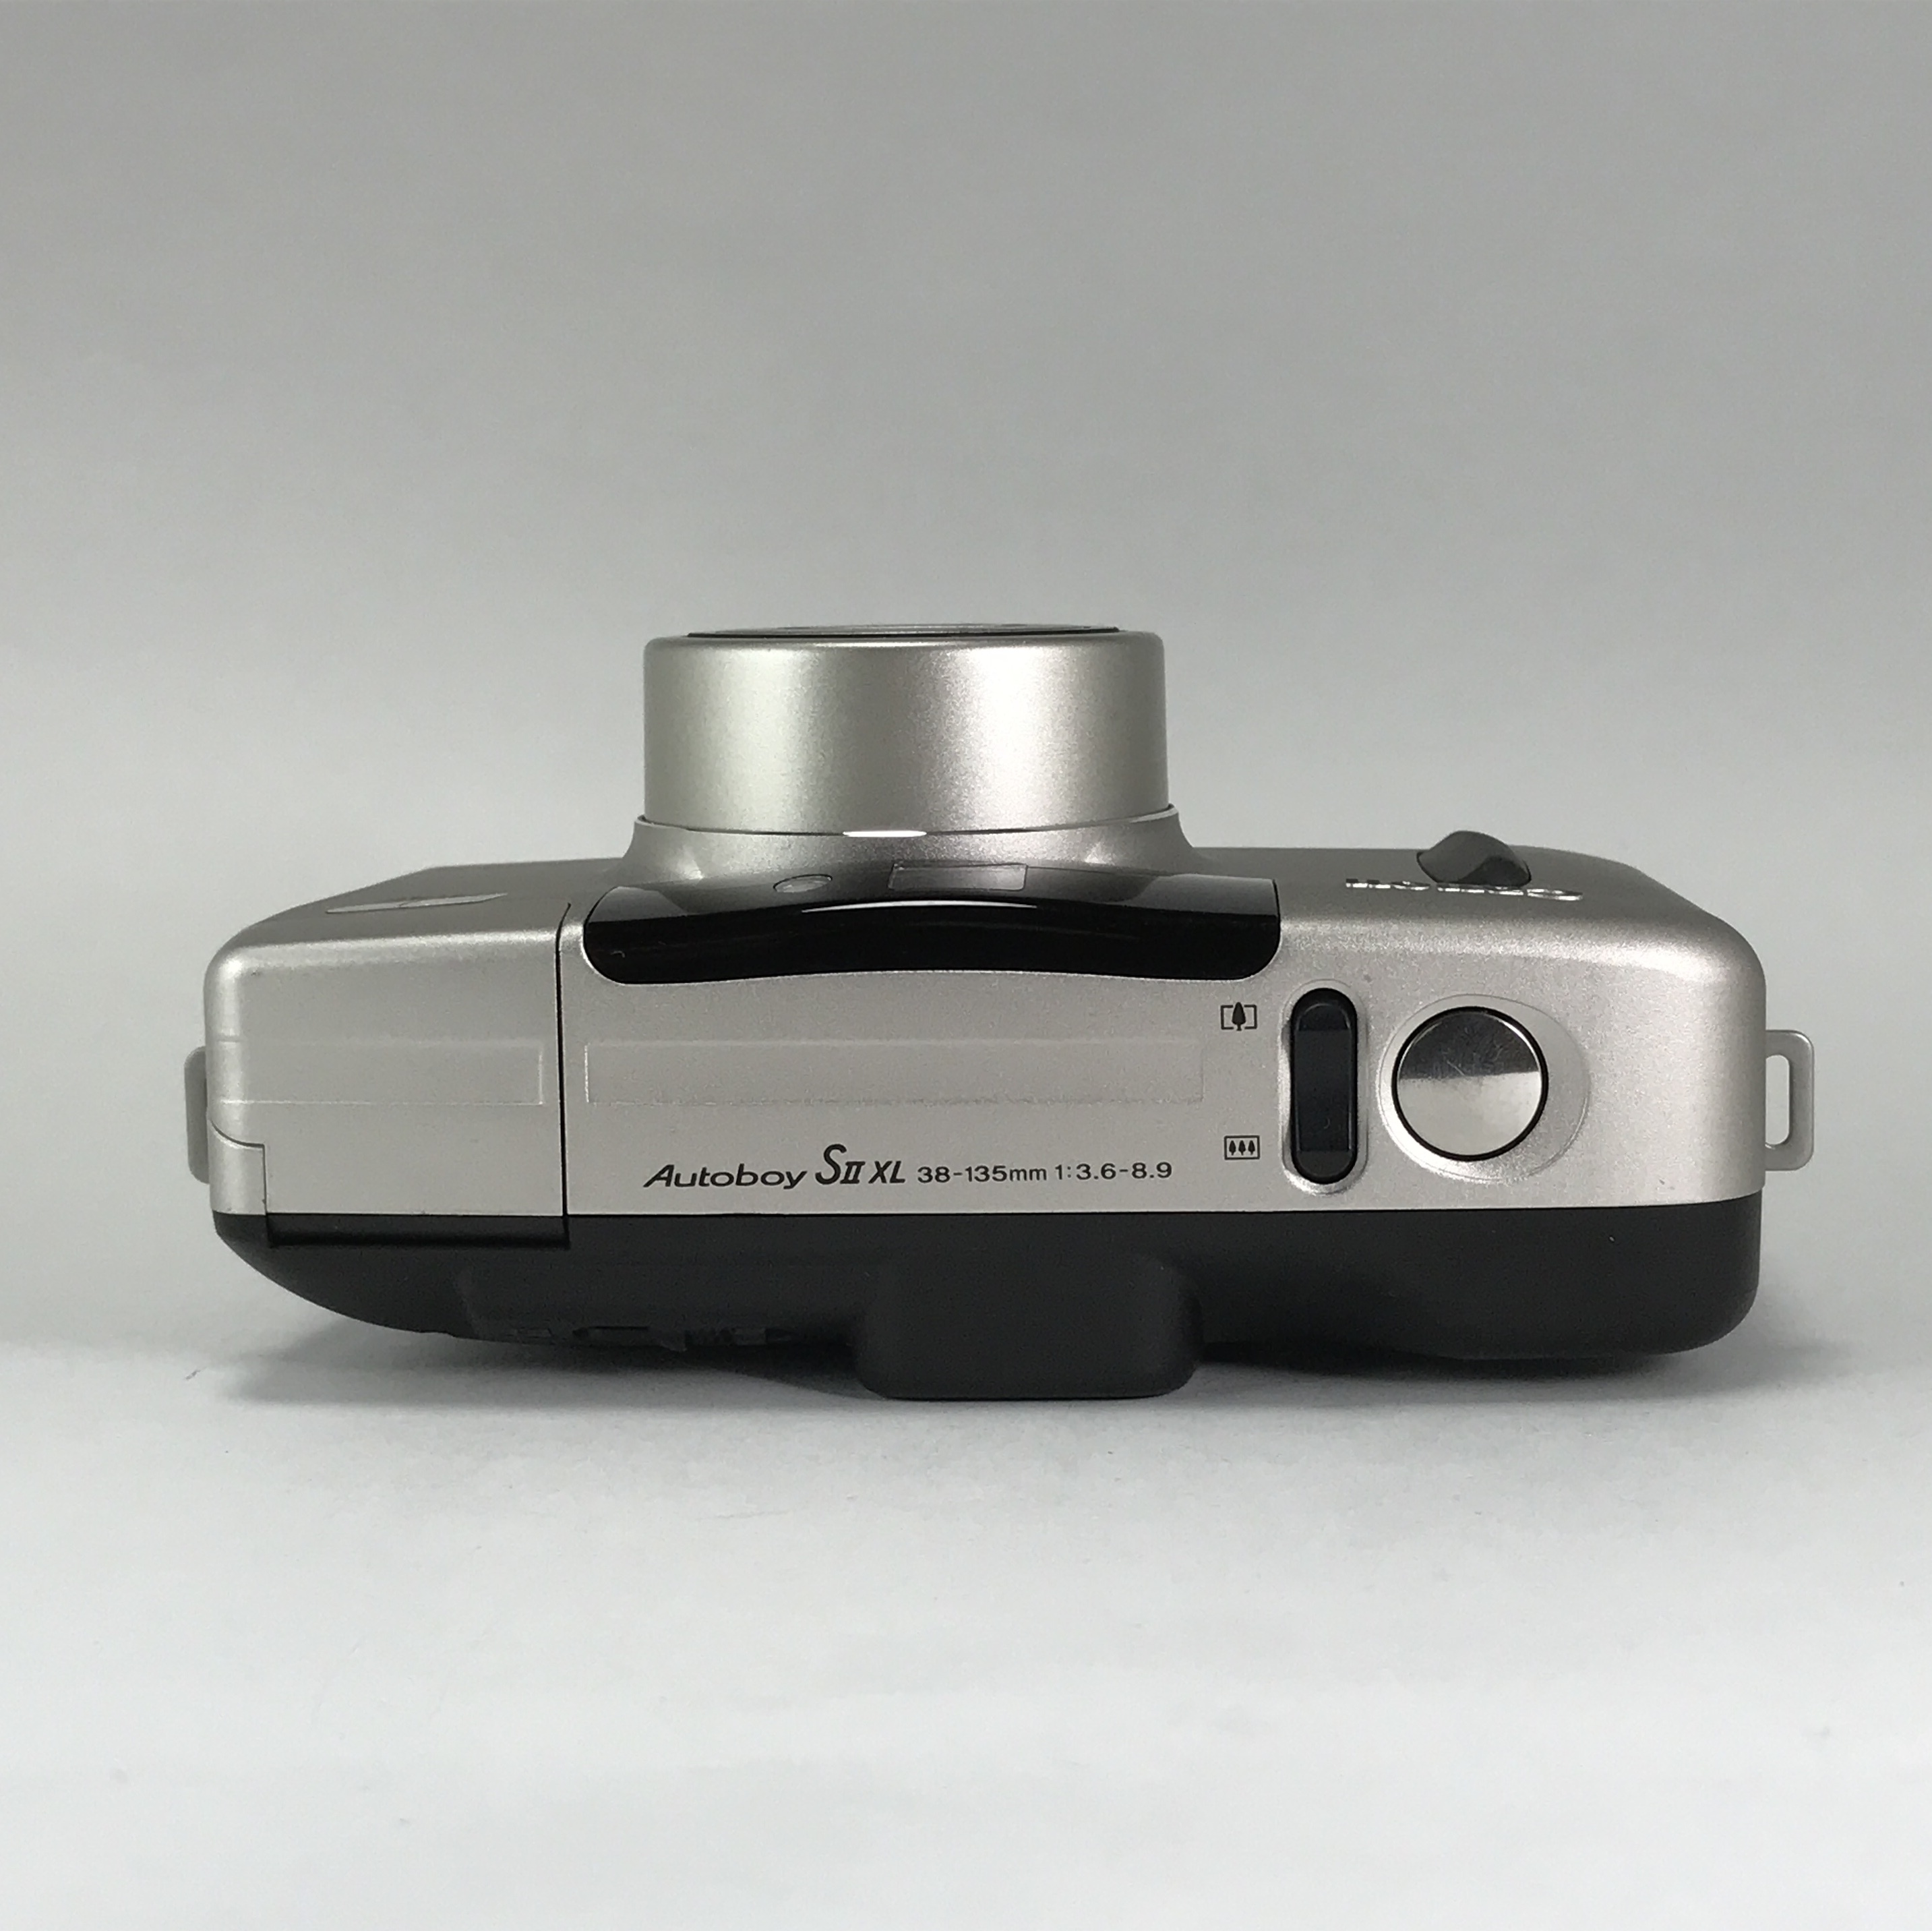 Canon Autoboy SⅡ XL | ヨアケマエカメラ